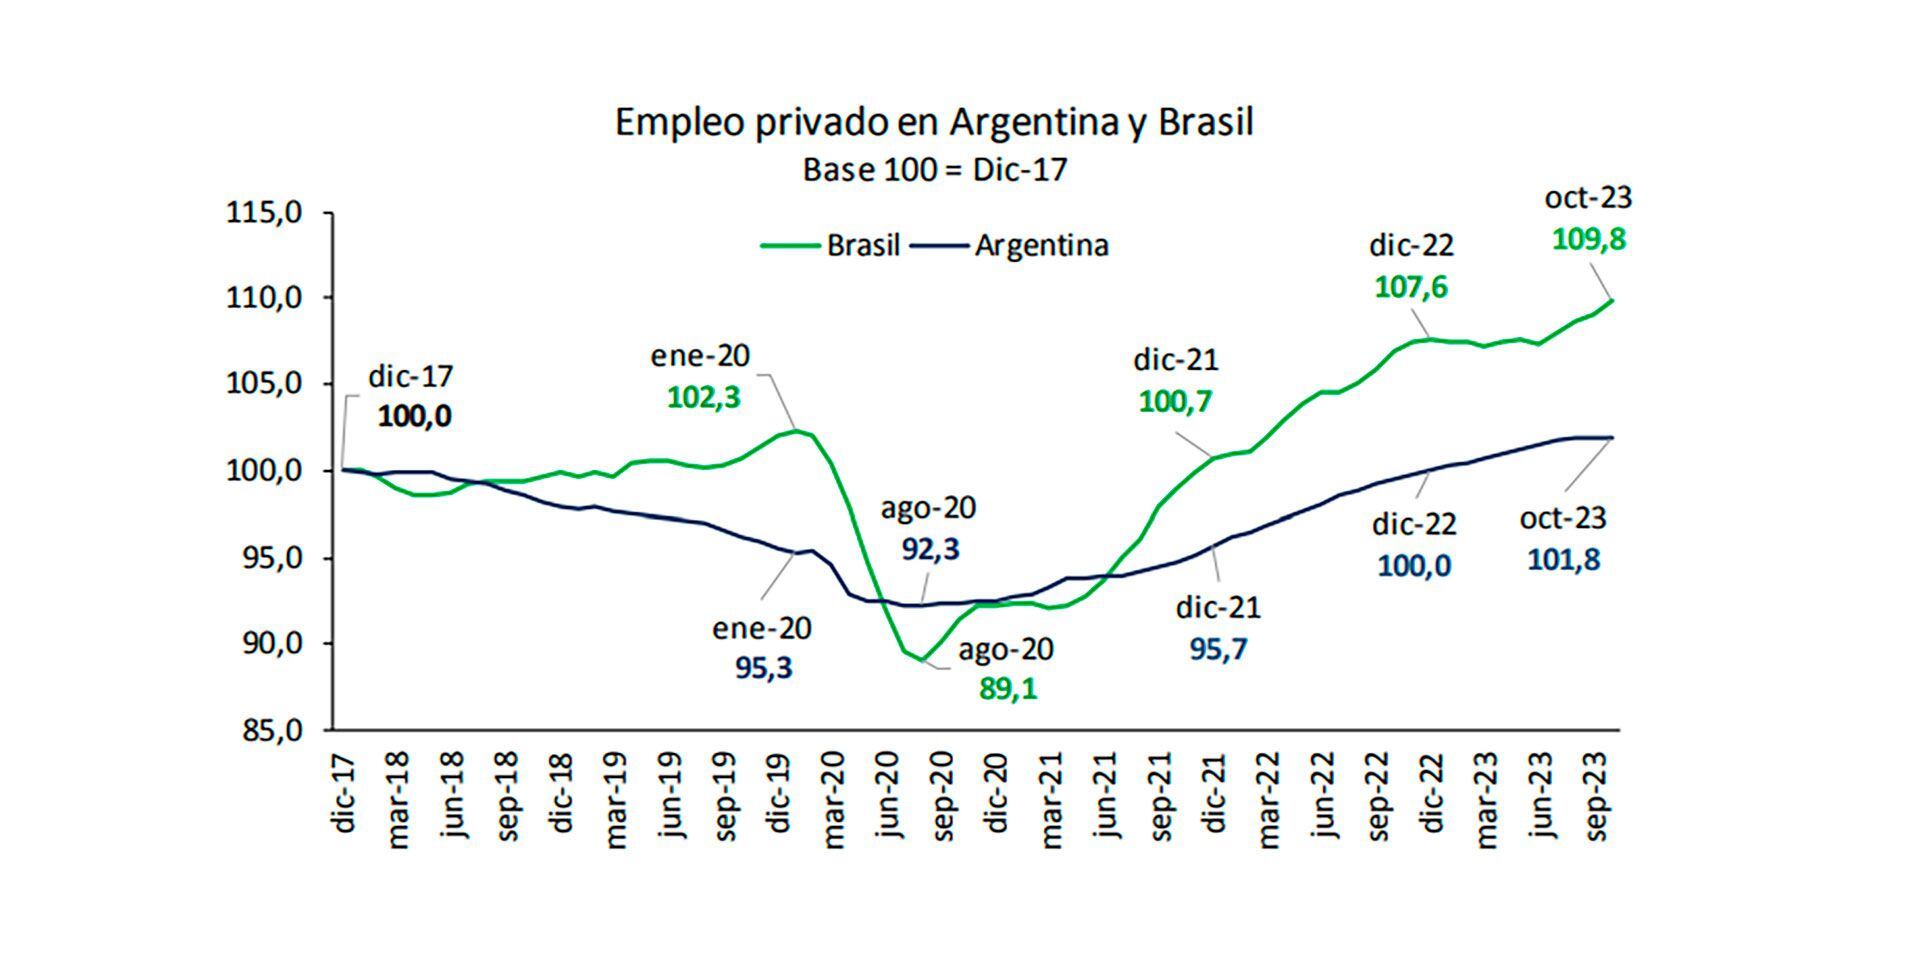 Empleo y PBI en la Argentina y Brasil